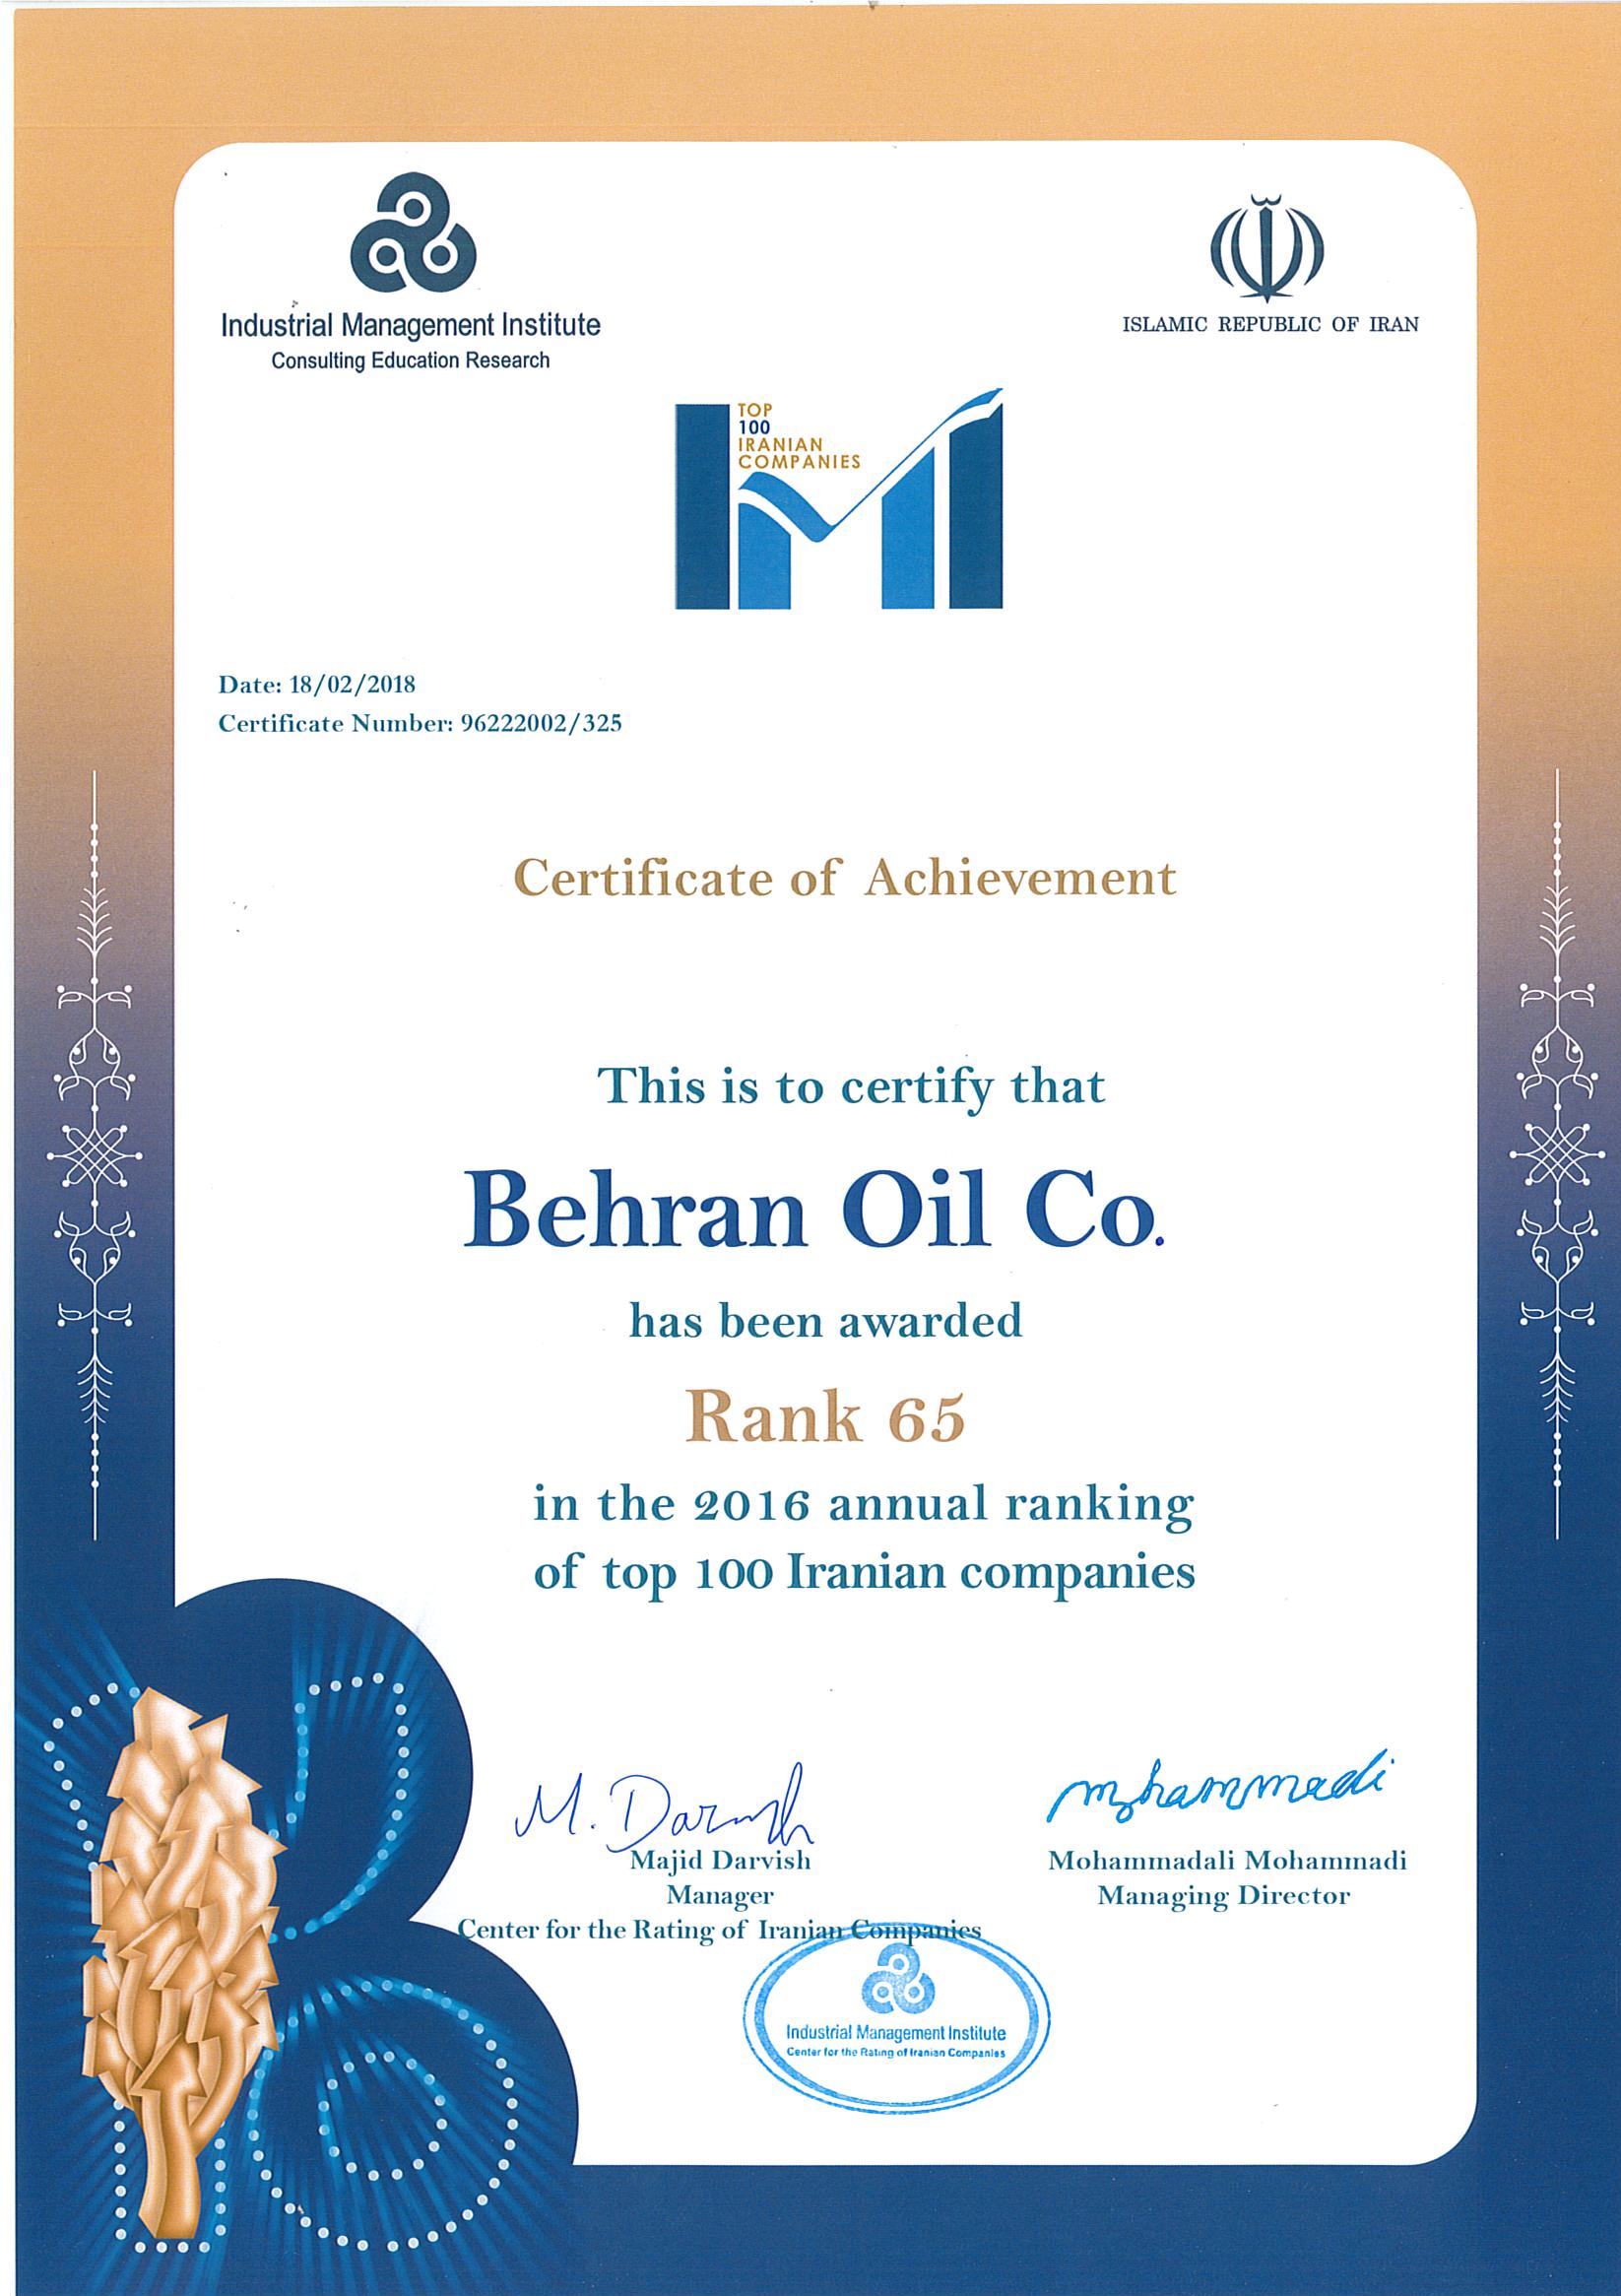 دریافت تندیس 100 شرکت برتر ایرانی توسط شرکت نفت بهران